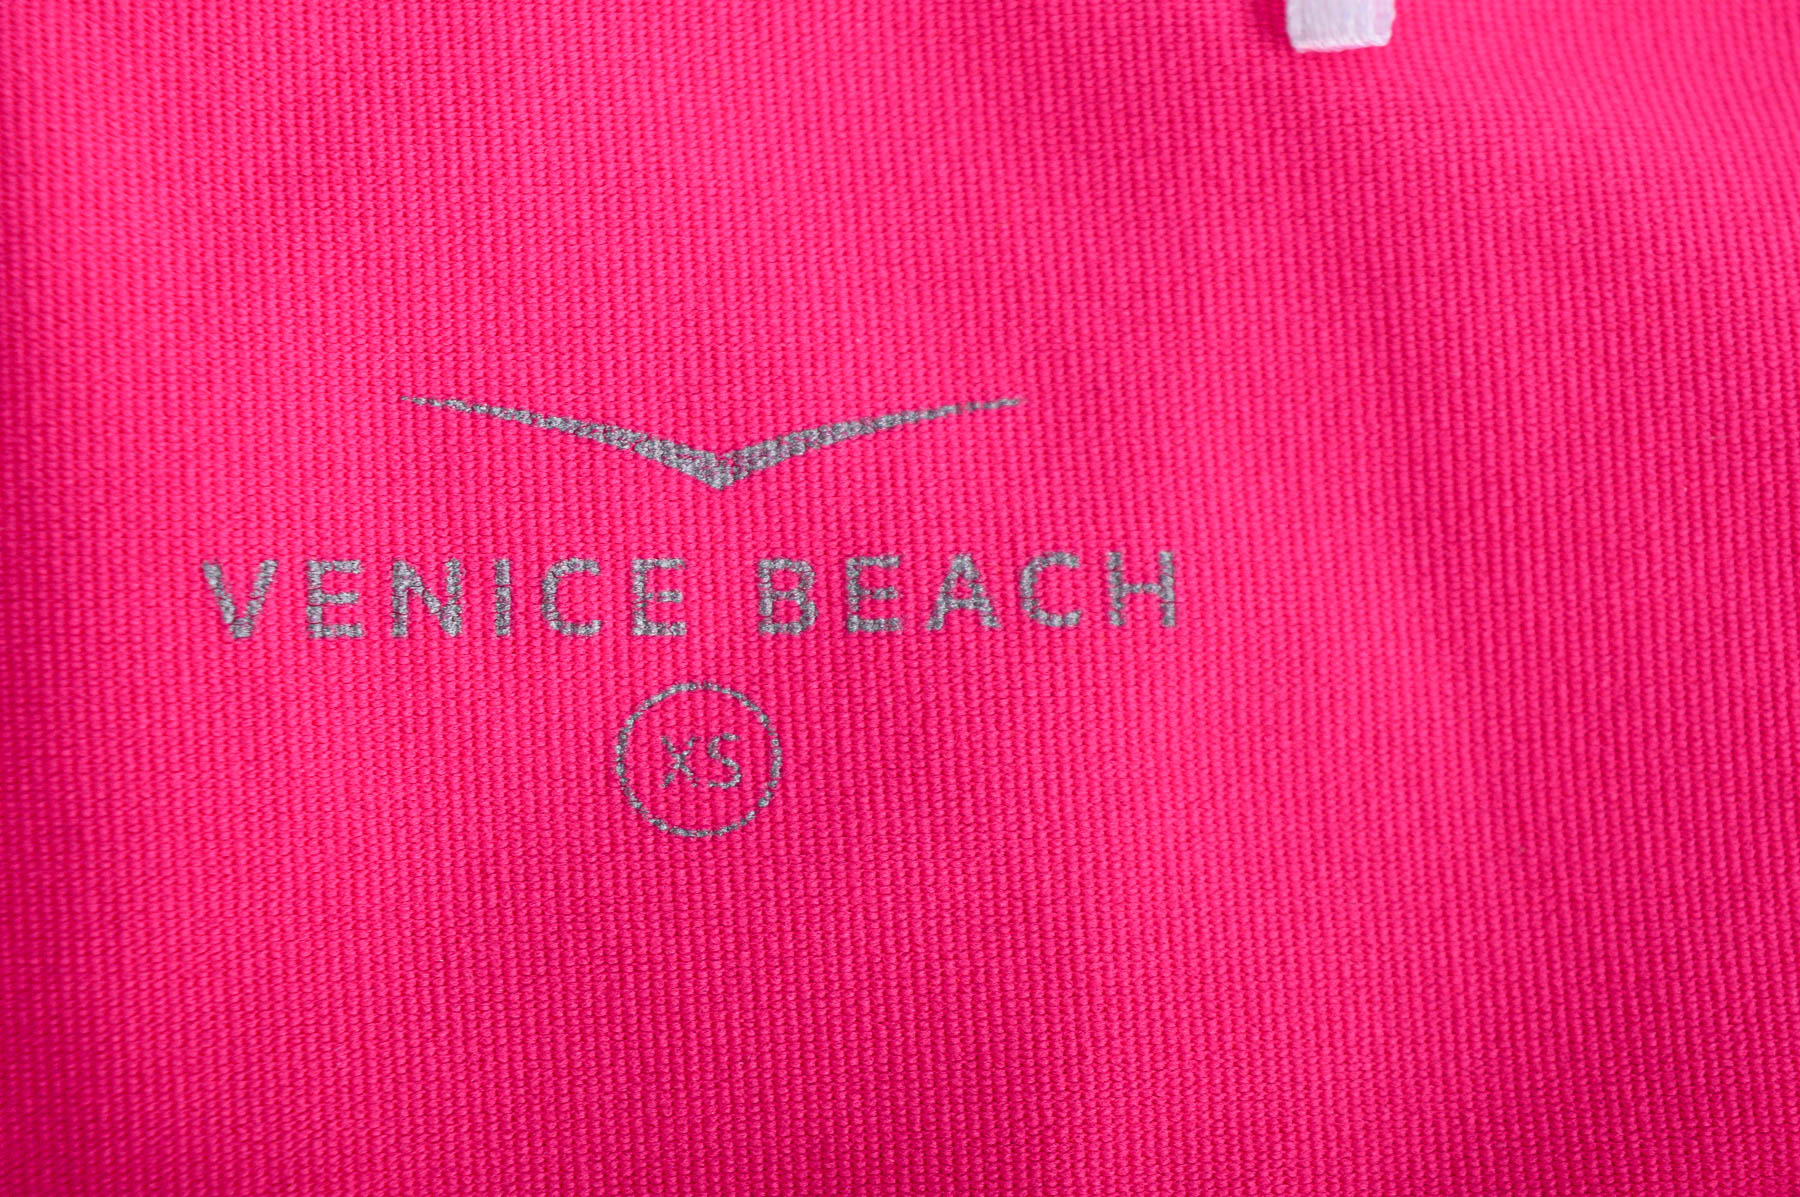 Tricou de damă - Venice Beach - 2